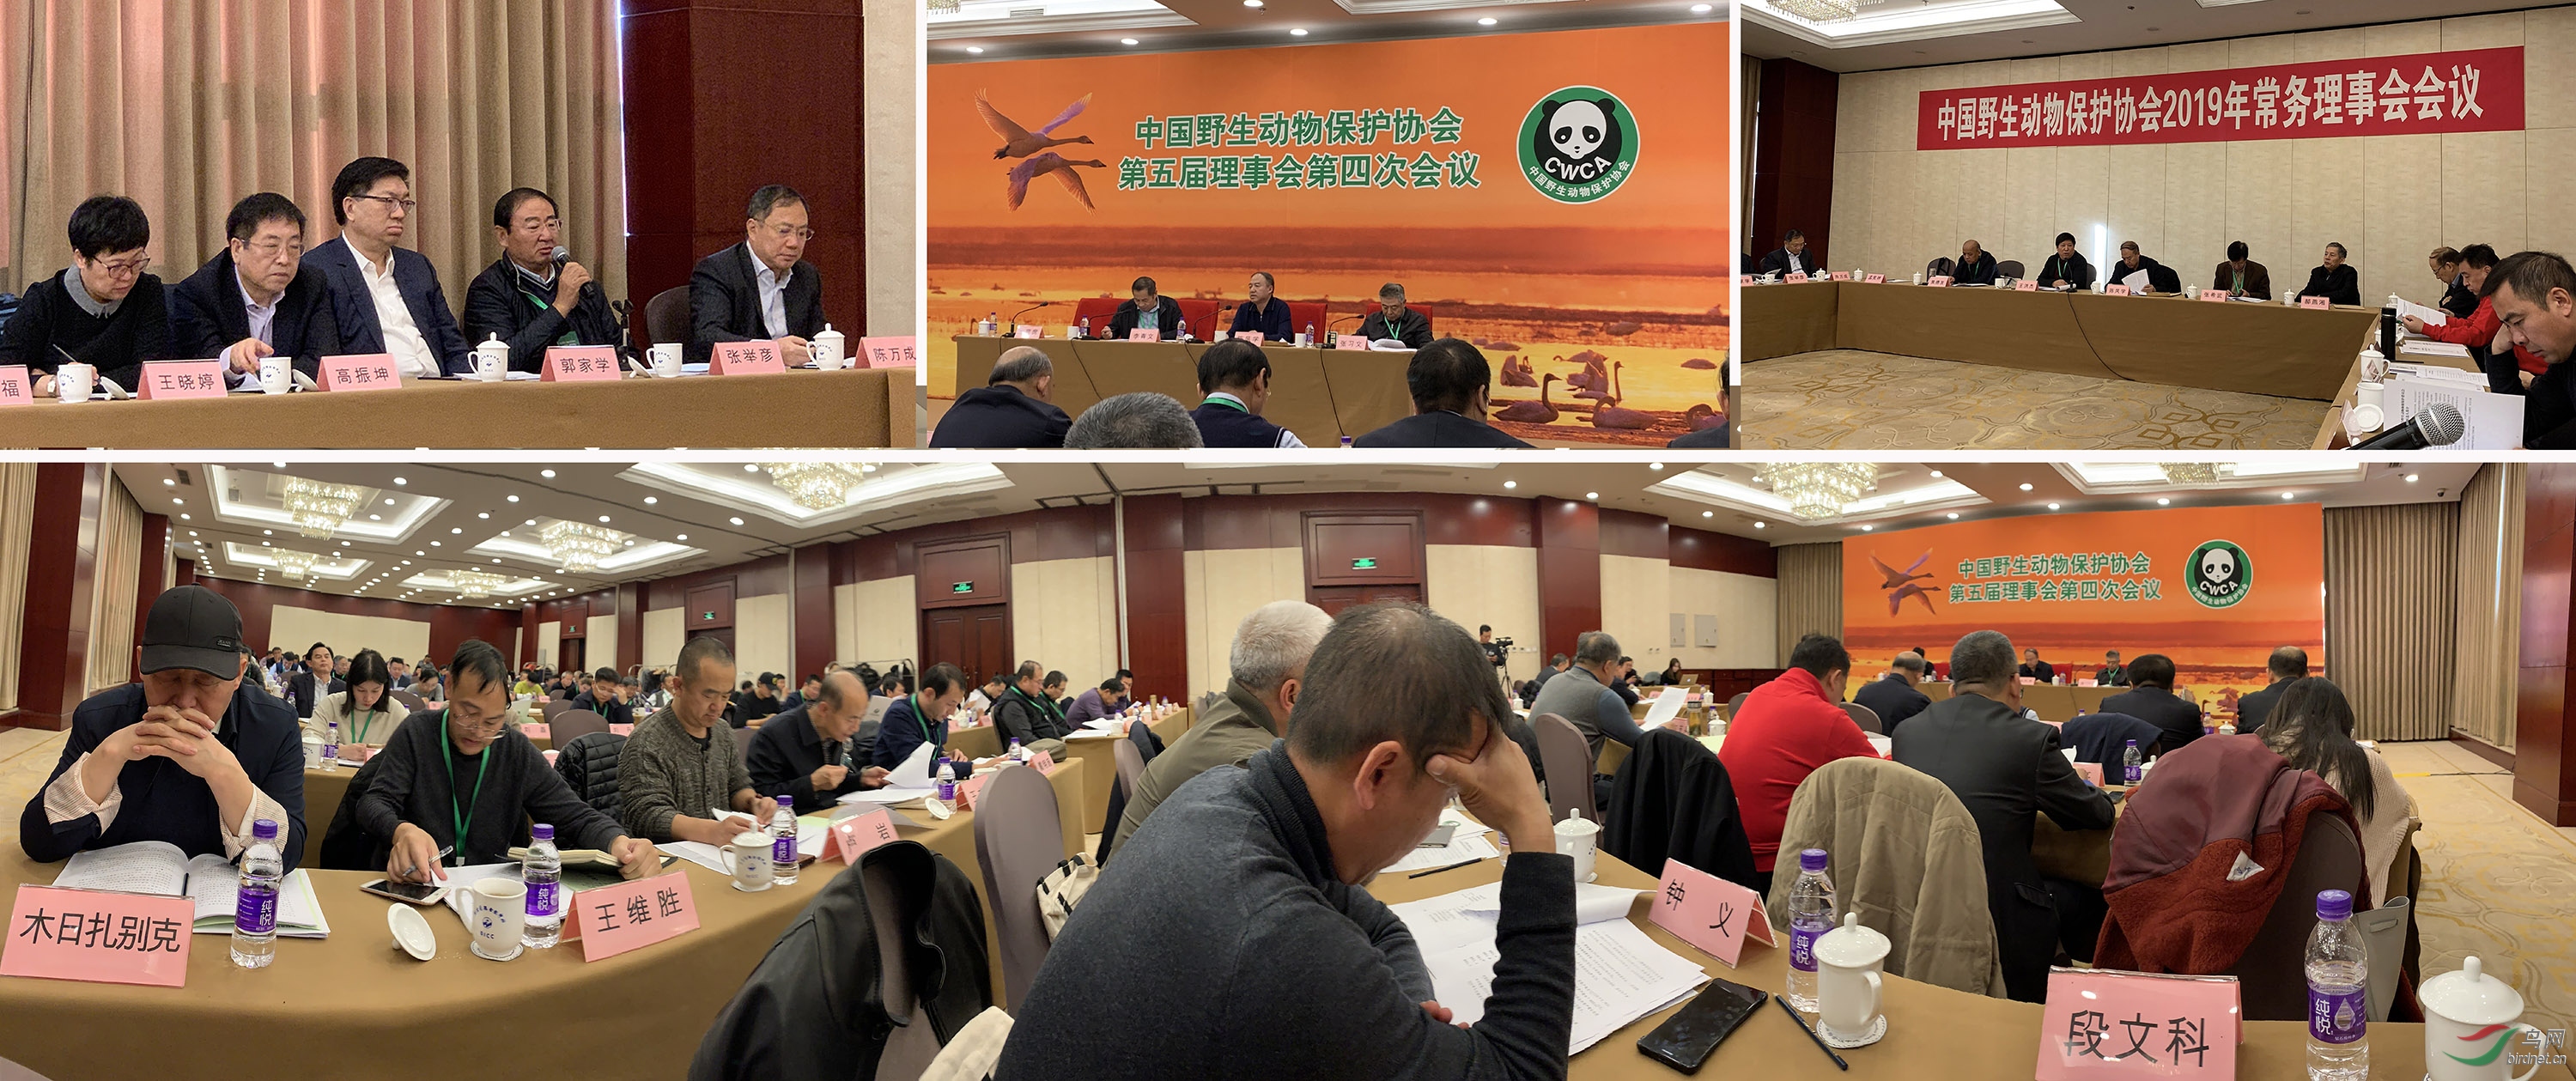 中国野生动物保护协会第五届理事会第四次会议-.jpg